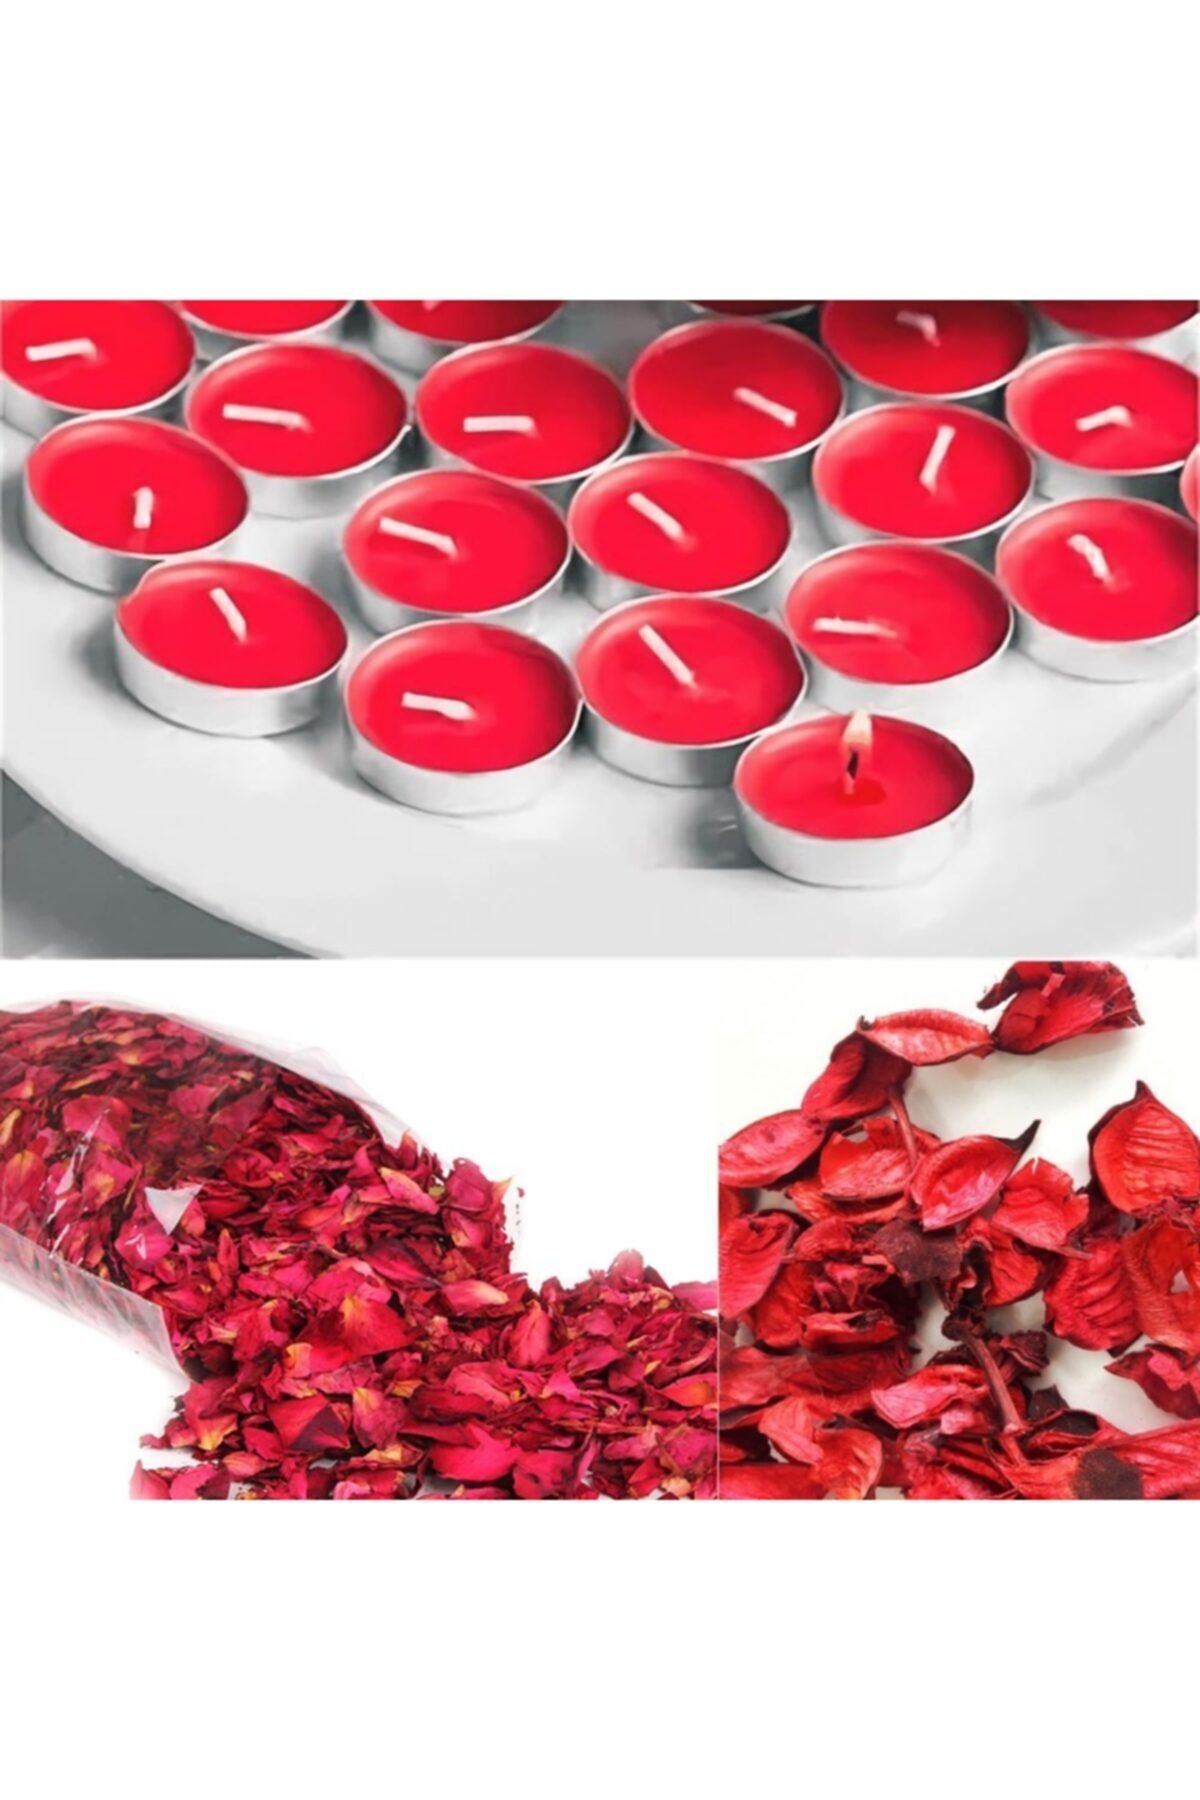 Deco Elit 1000 Adet Kuru Gül Yaprağı + 25 Adet Kırmızı Tealight Mum Romantik Süsleme